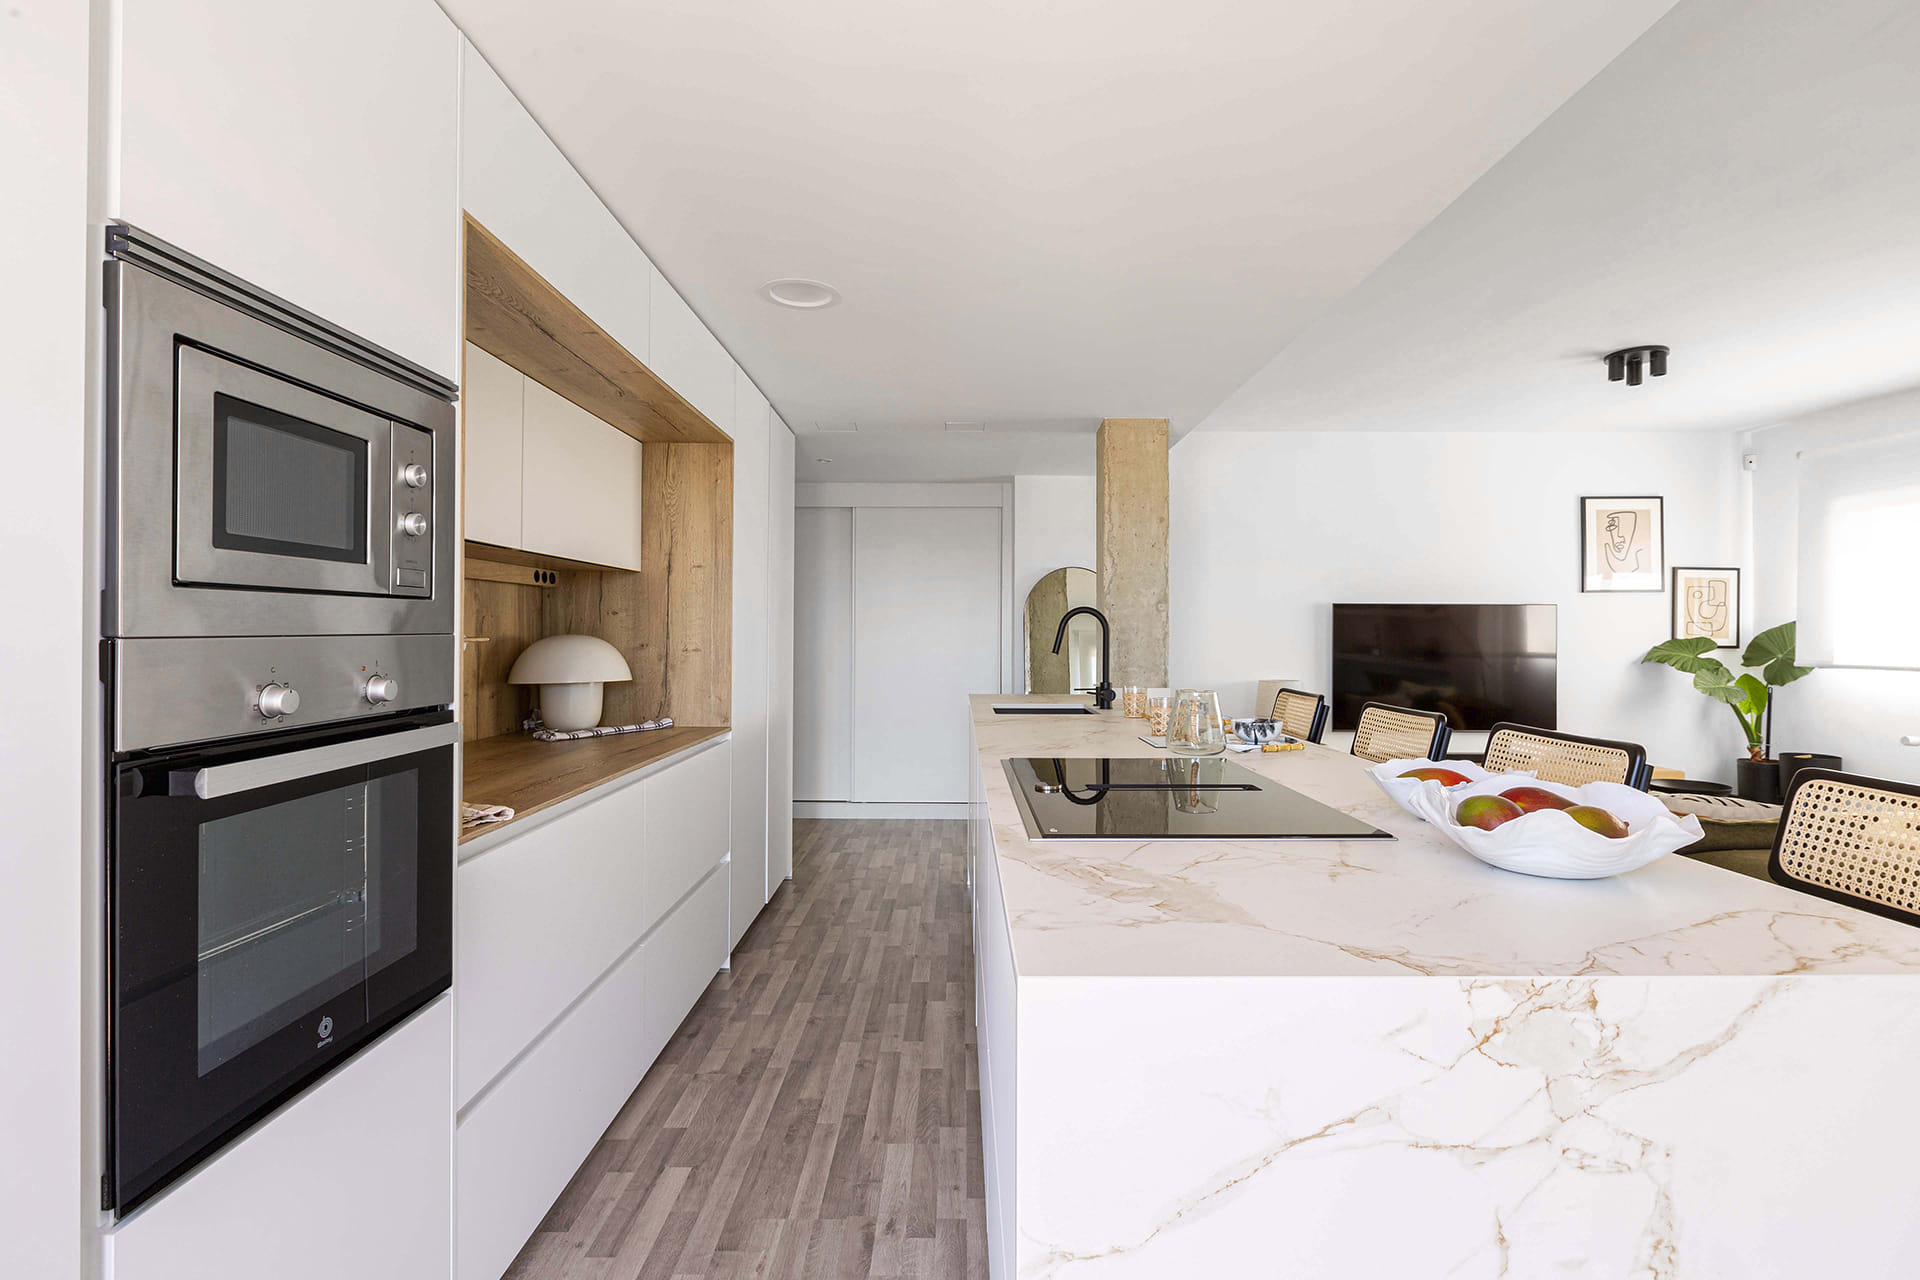 Cozinha branca Santos com mobiliário de composição linear